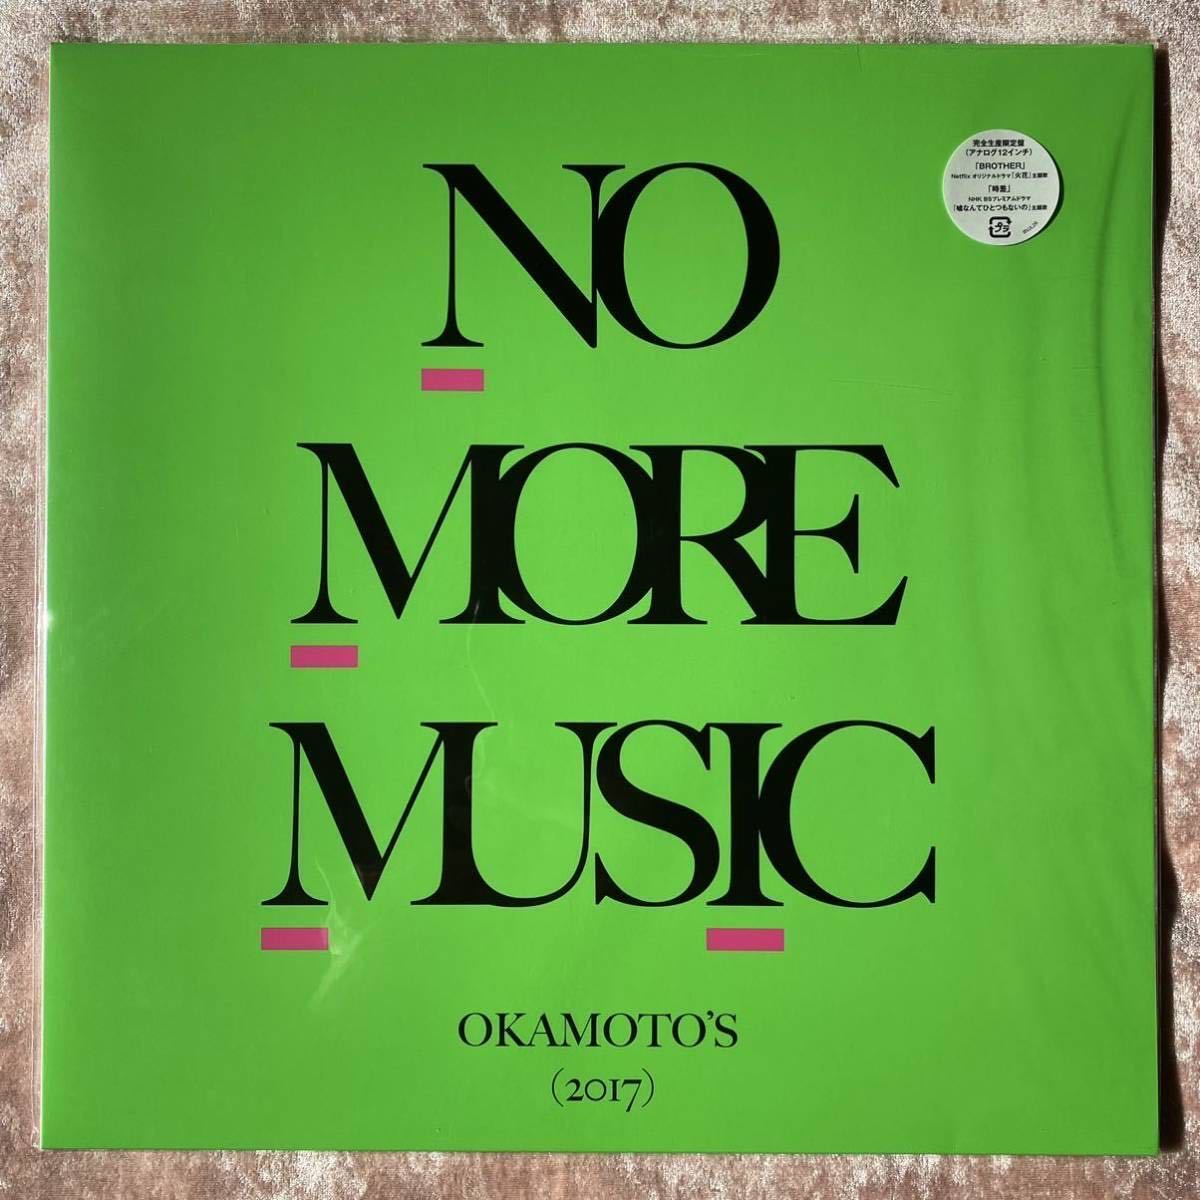 高価値 美品 OKAMOTO'S NO MORE MUSIC レコード LP アナログ labca.com.ar